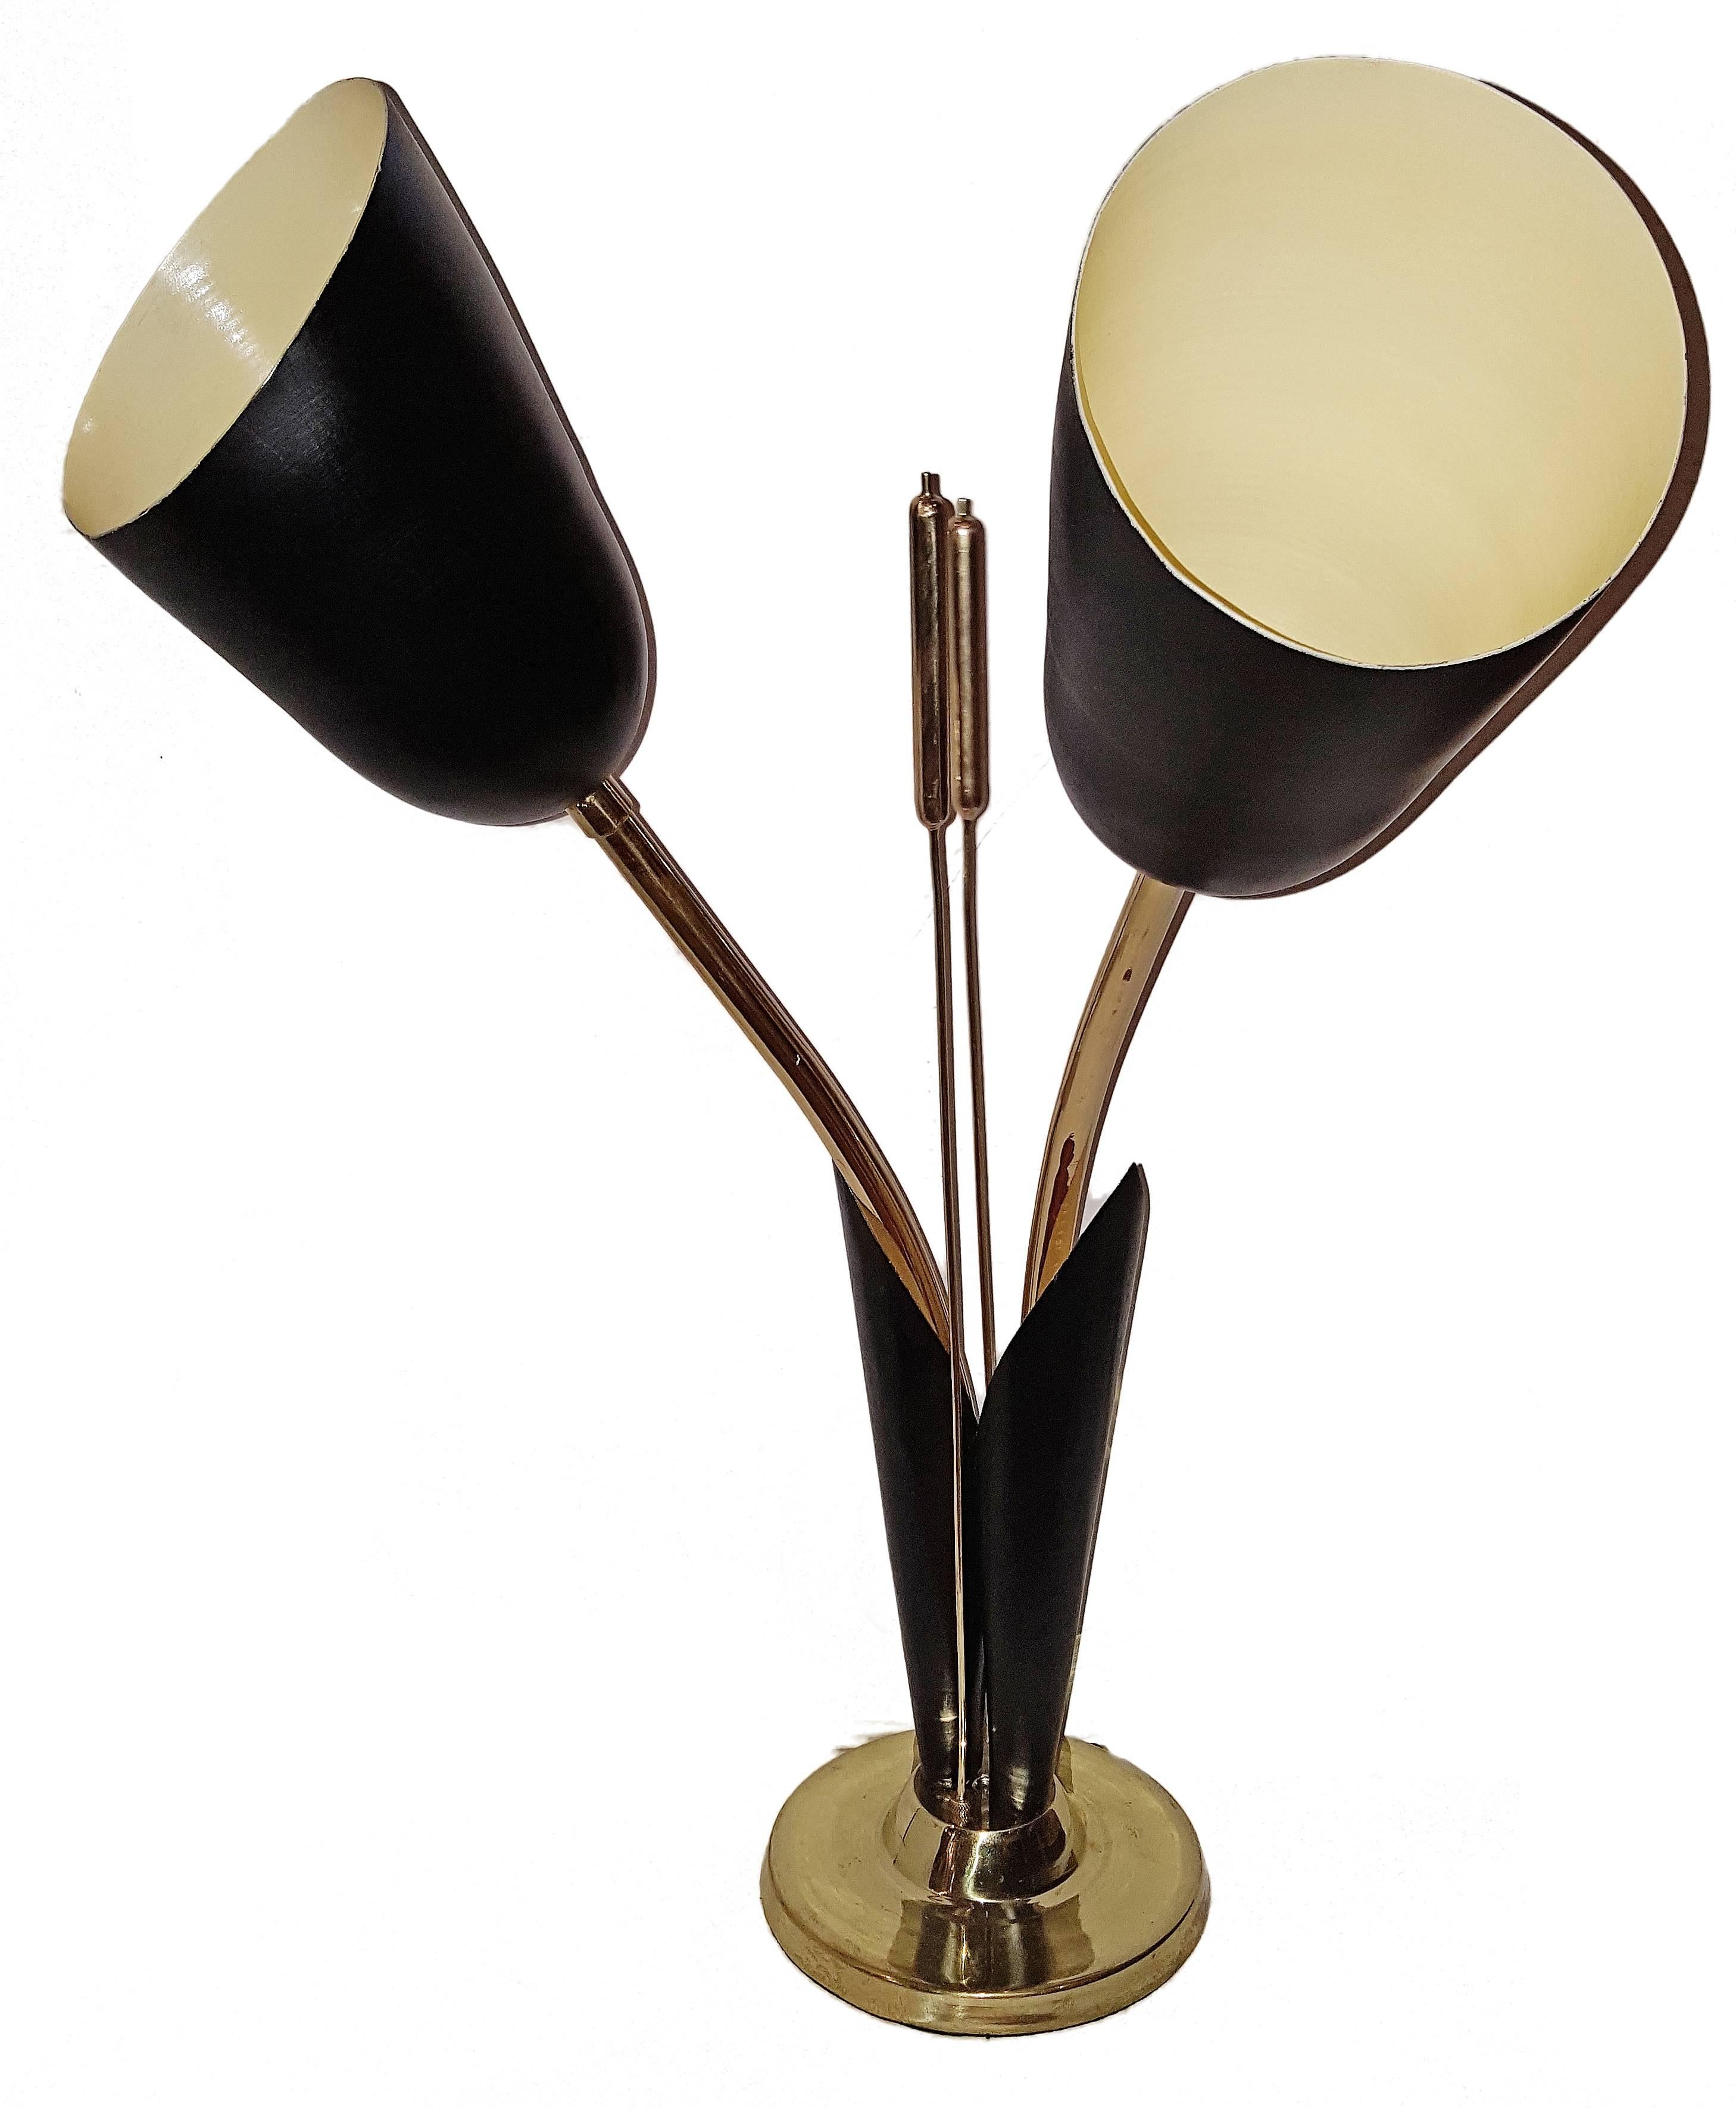 Paire de lampes italiennes dorées des années 1960 avec abat-jour en tole noire, queue de chat.
Mesures : 27